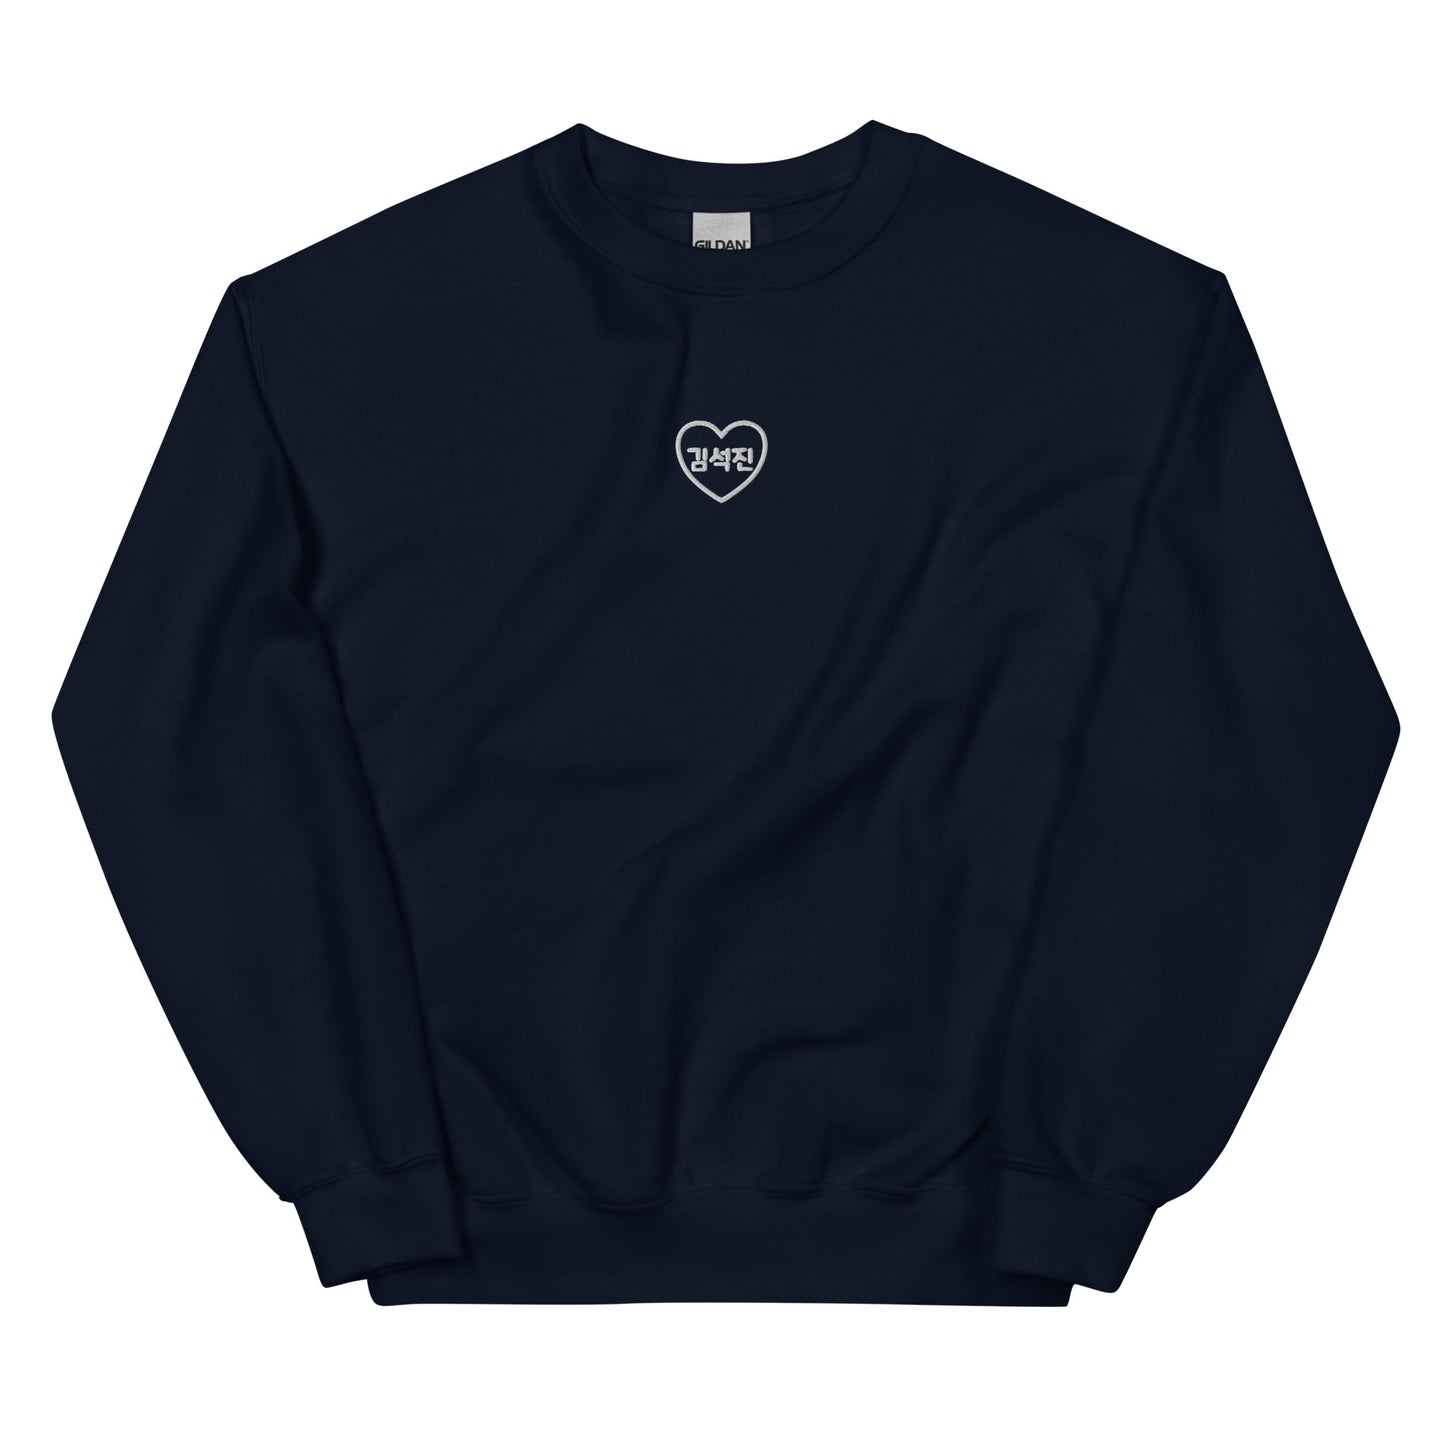 BTS Jin, Kim Seok-jin in Korean Heart Embroidery Unisex Sweatshirt